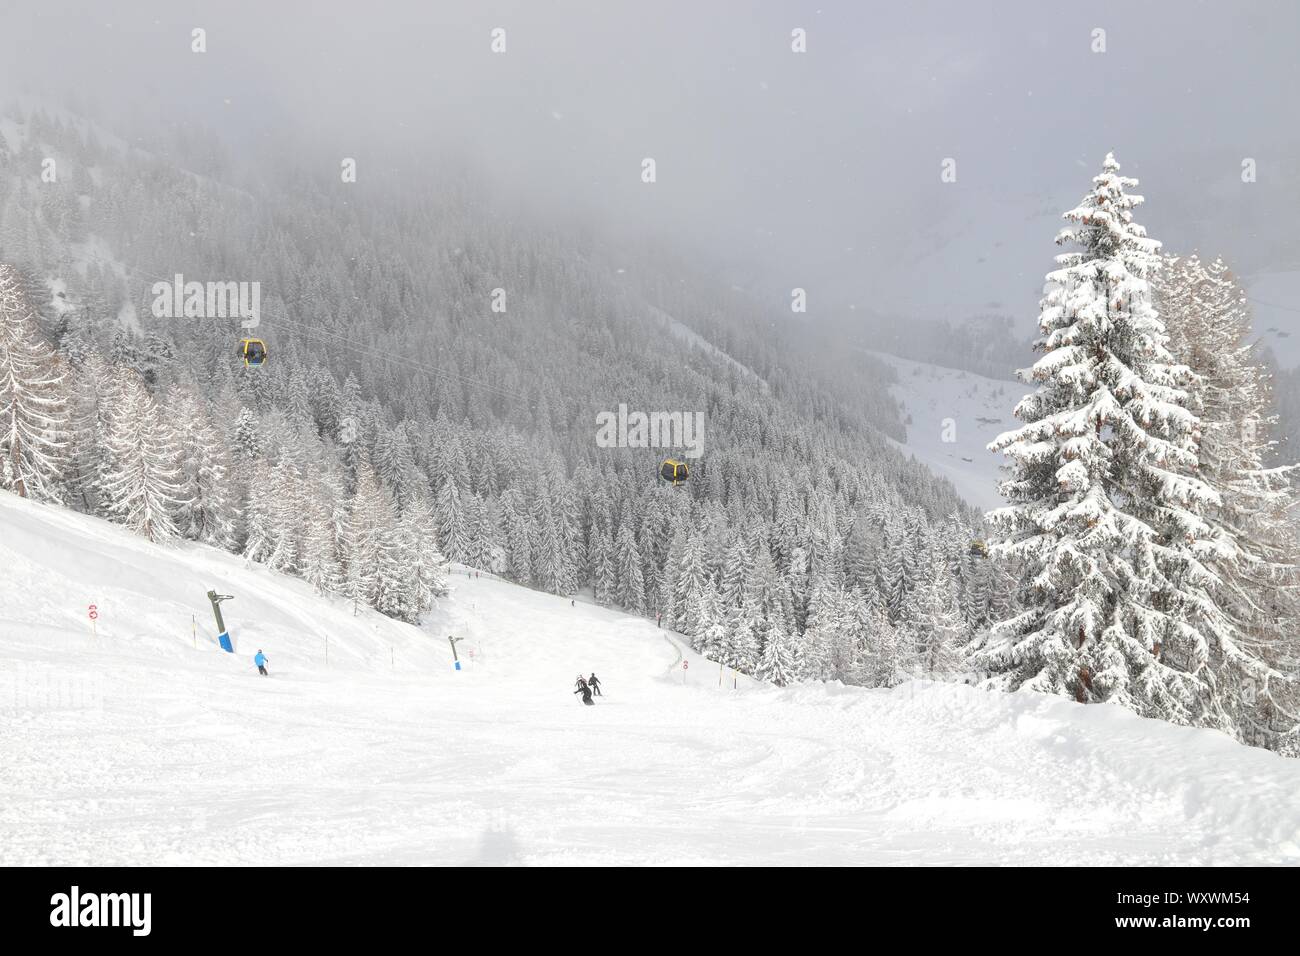 Alpi austriache in inverno ski resort - Mayrhofen in Tirolo. Centrale austriaco delle Alpi. Moesl ski run. Foto Stock